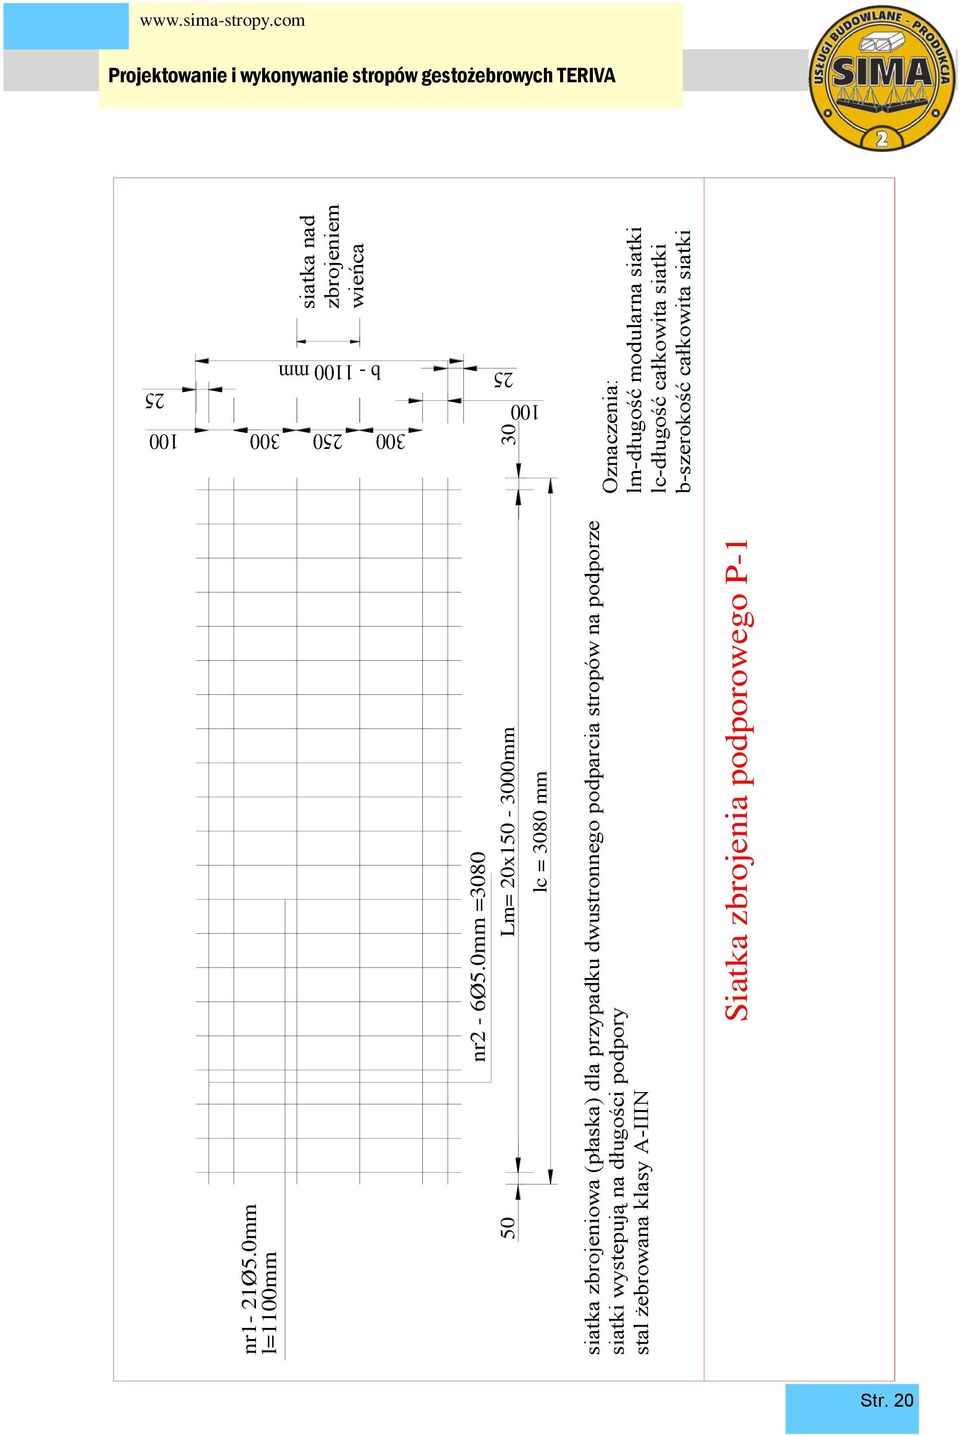 Projektowanie i wykonywanie stropów gestożebrowych TERIVA SIMA 2  PRZEDSIĘBIORSTWO HANDLOWO USŁUGOWE PRODUCENT STROPÓW TERIVA STROPY TERIVA -  PDF Free Download